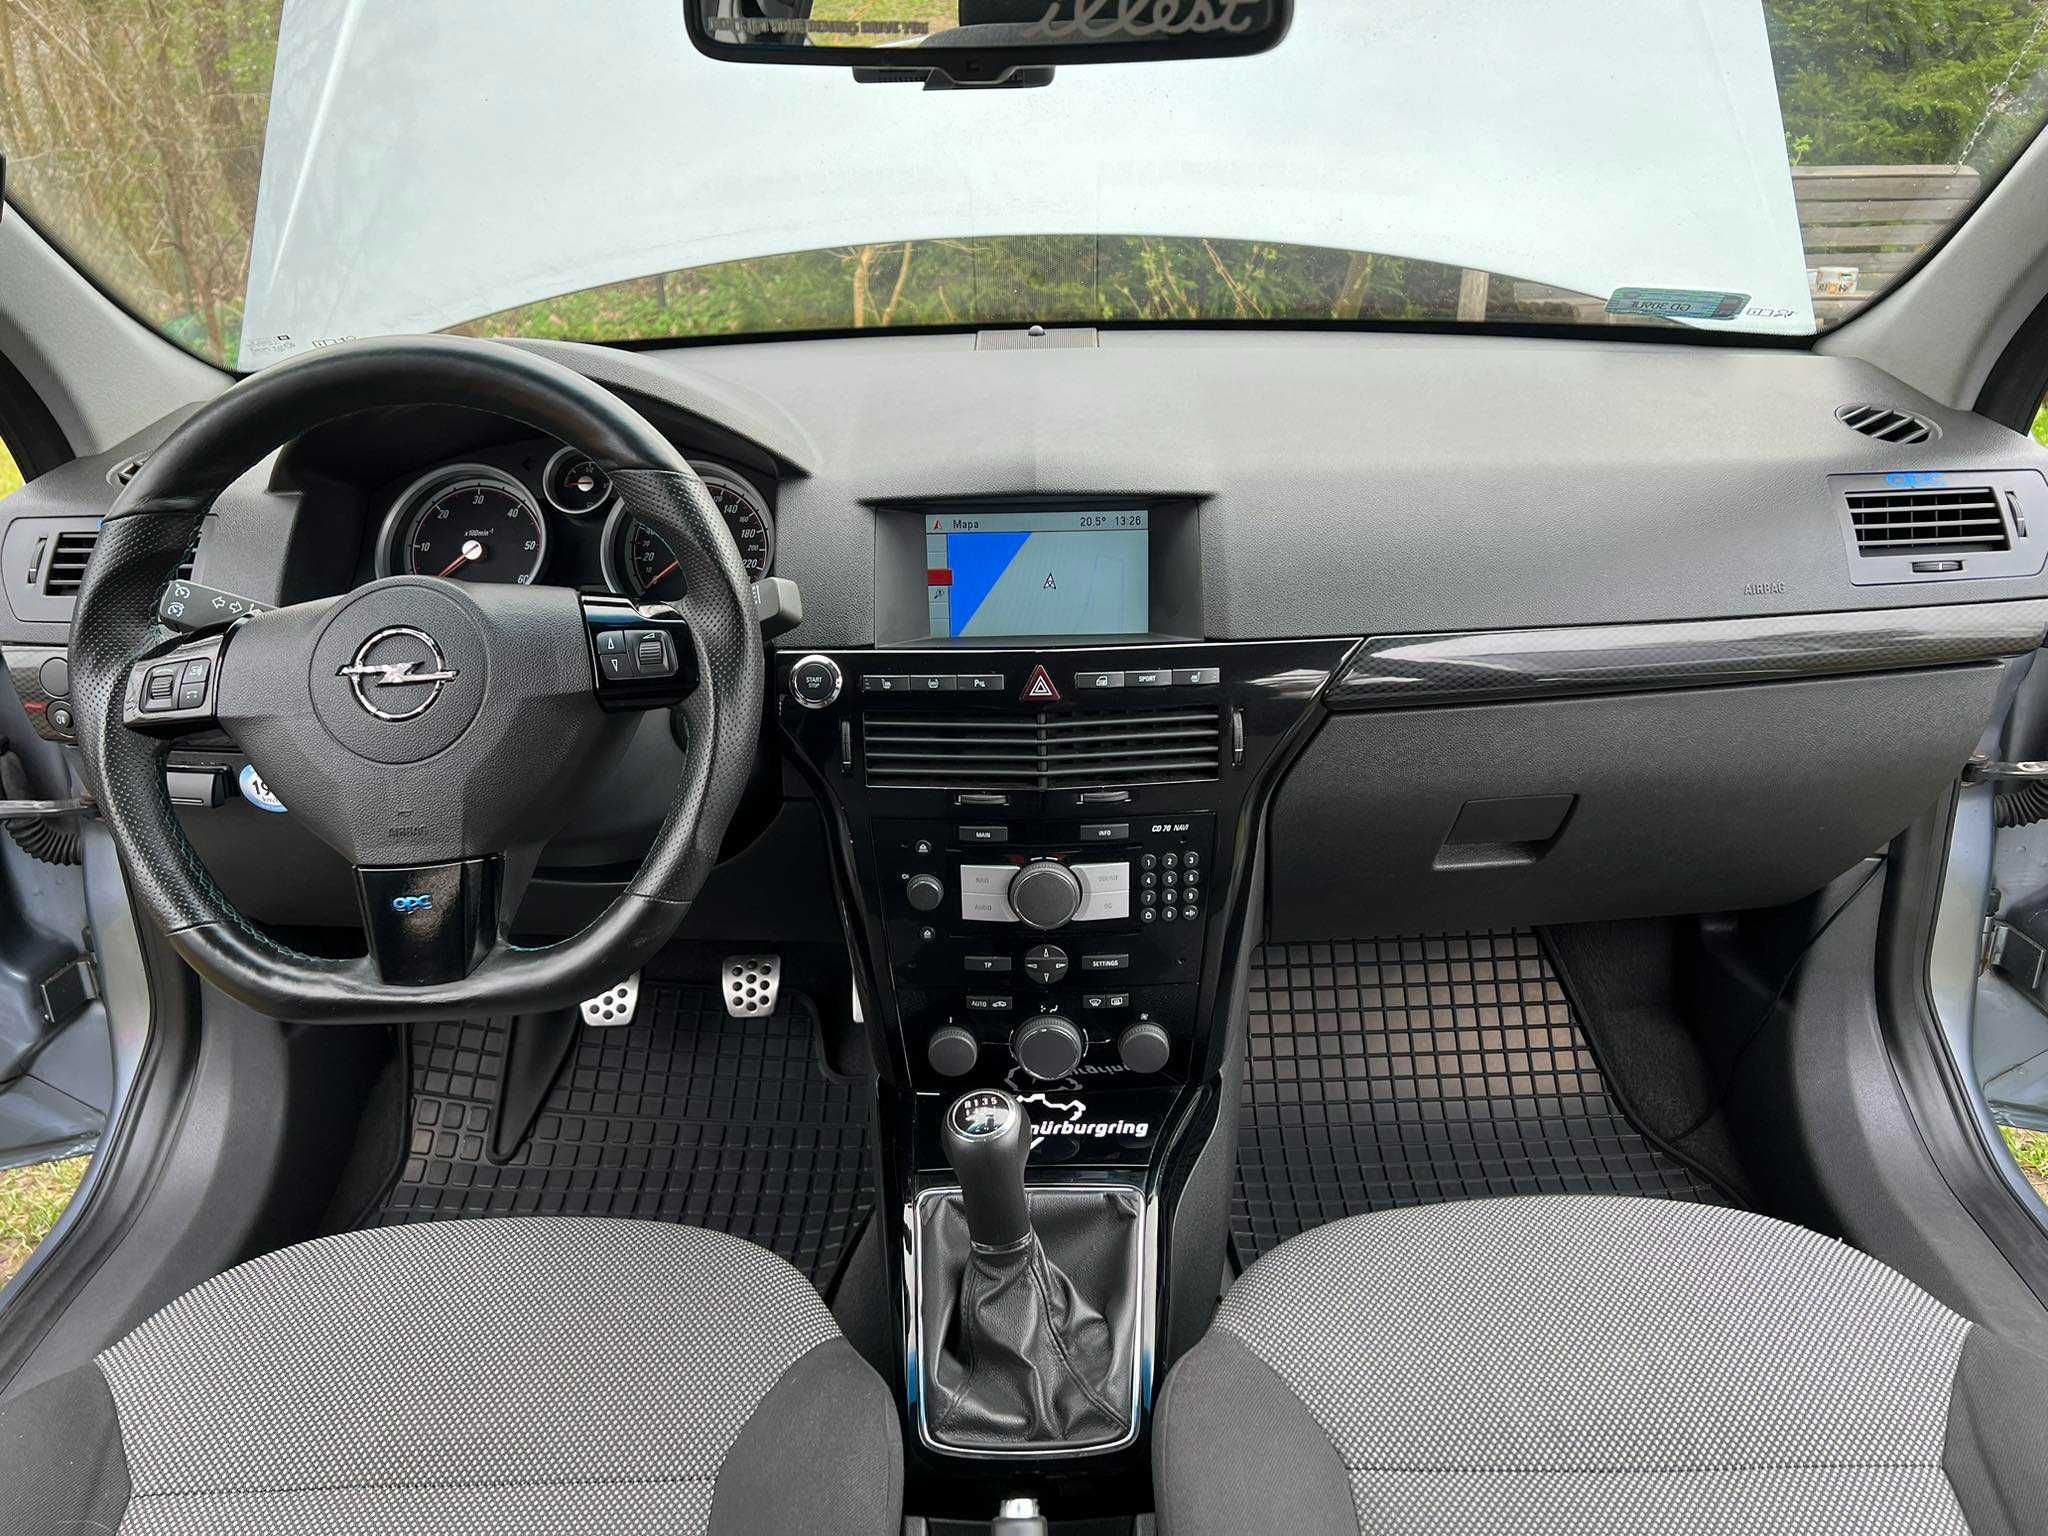 Opel Astra H, jedyny właściciel, idealny stan, bezwypadkowy, zadbany